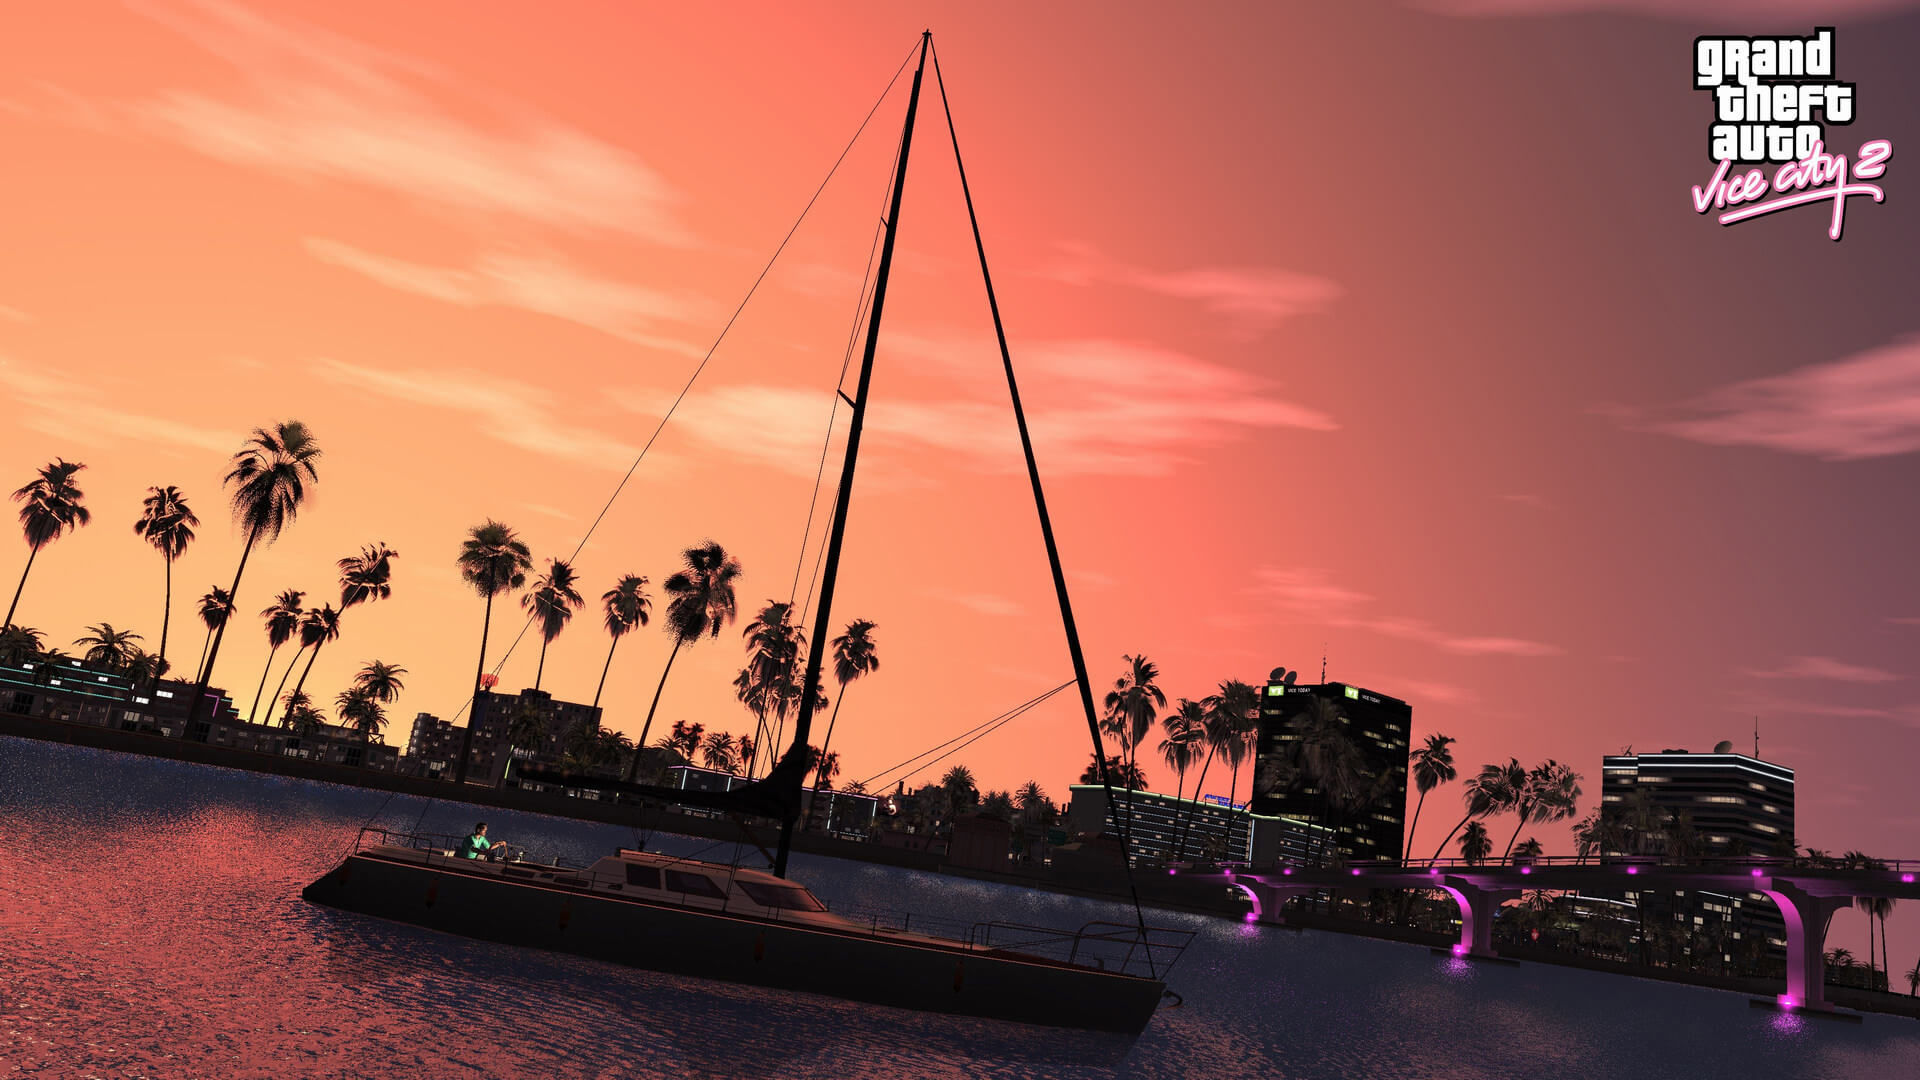 GTA: Vice City Remastered projesinden ekran görüntüleri geldi